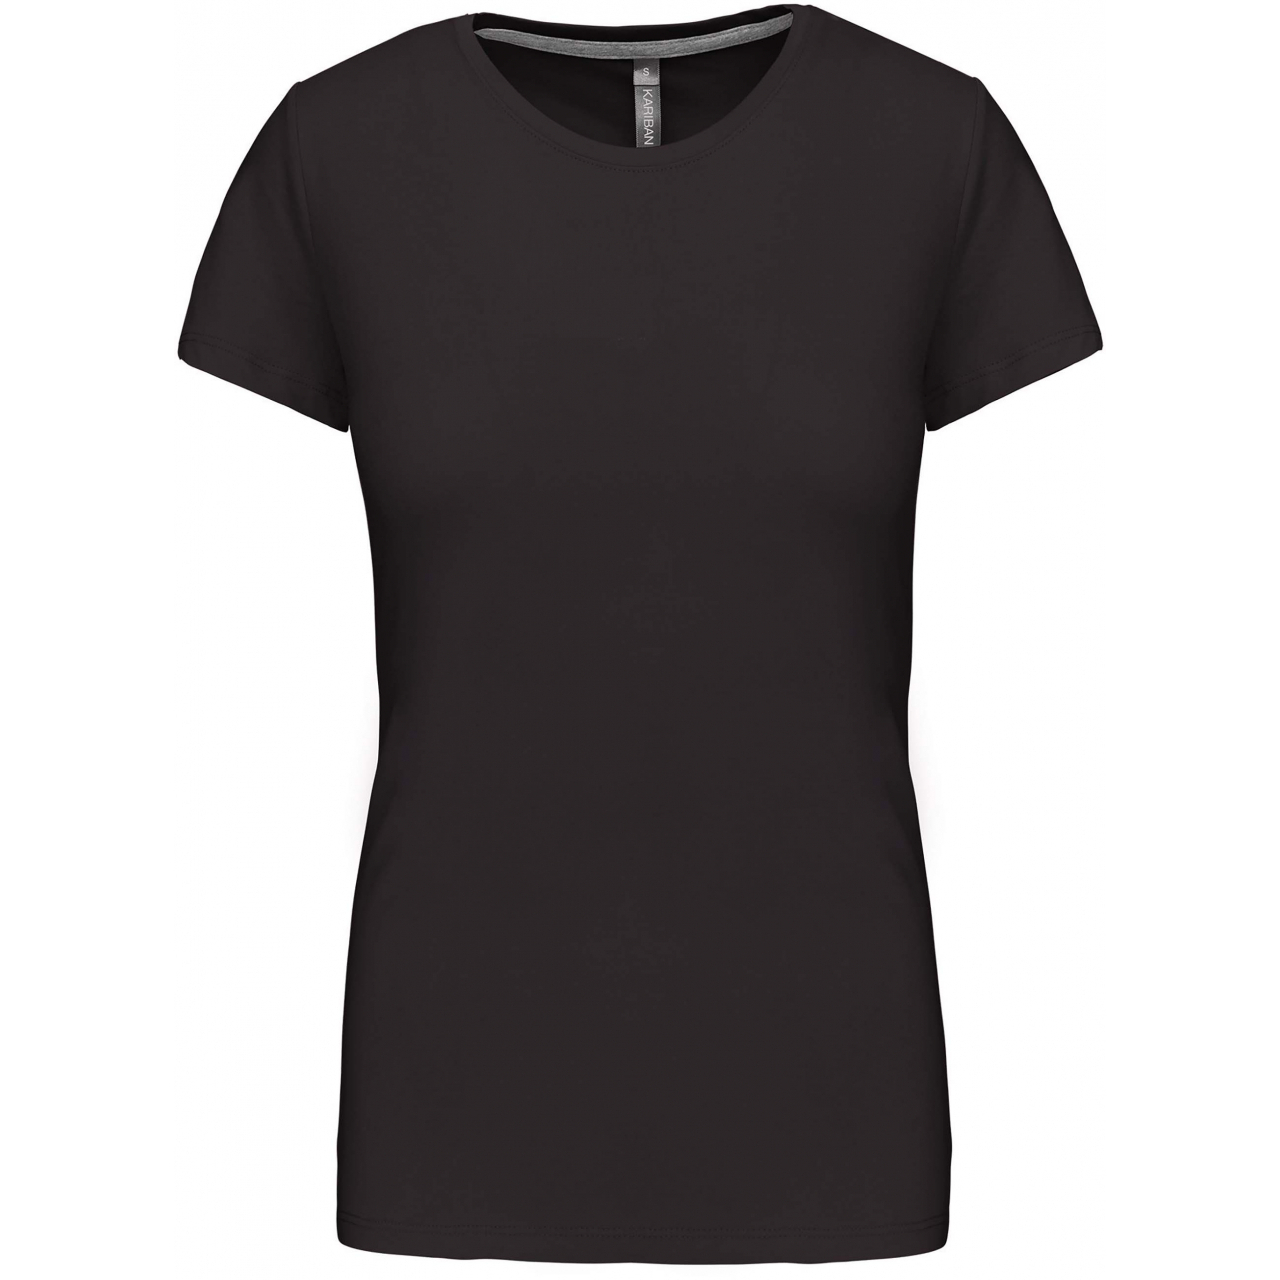 Dámské tričko Kariban s krátkým rukávem - tmavě šedé, XXL